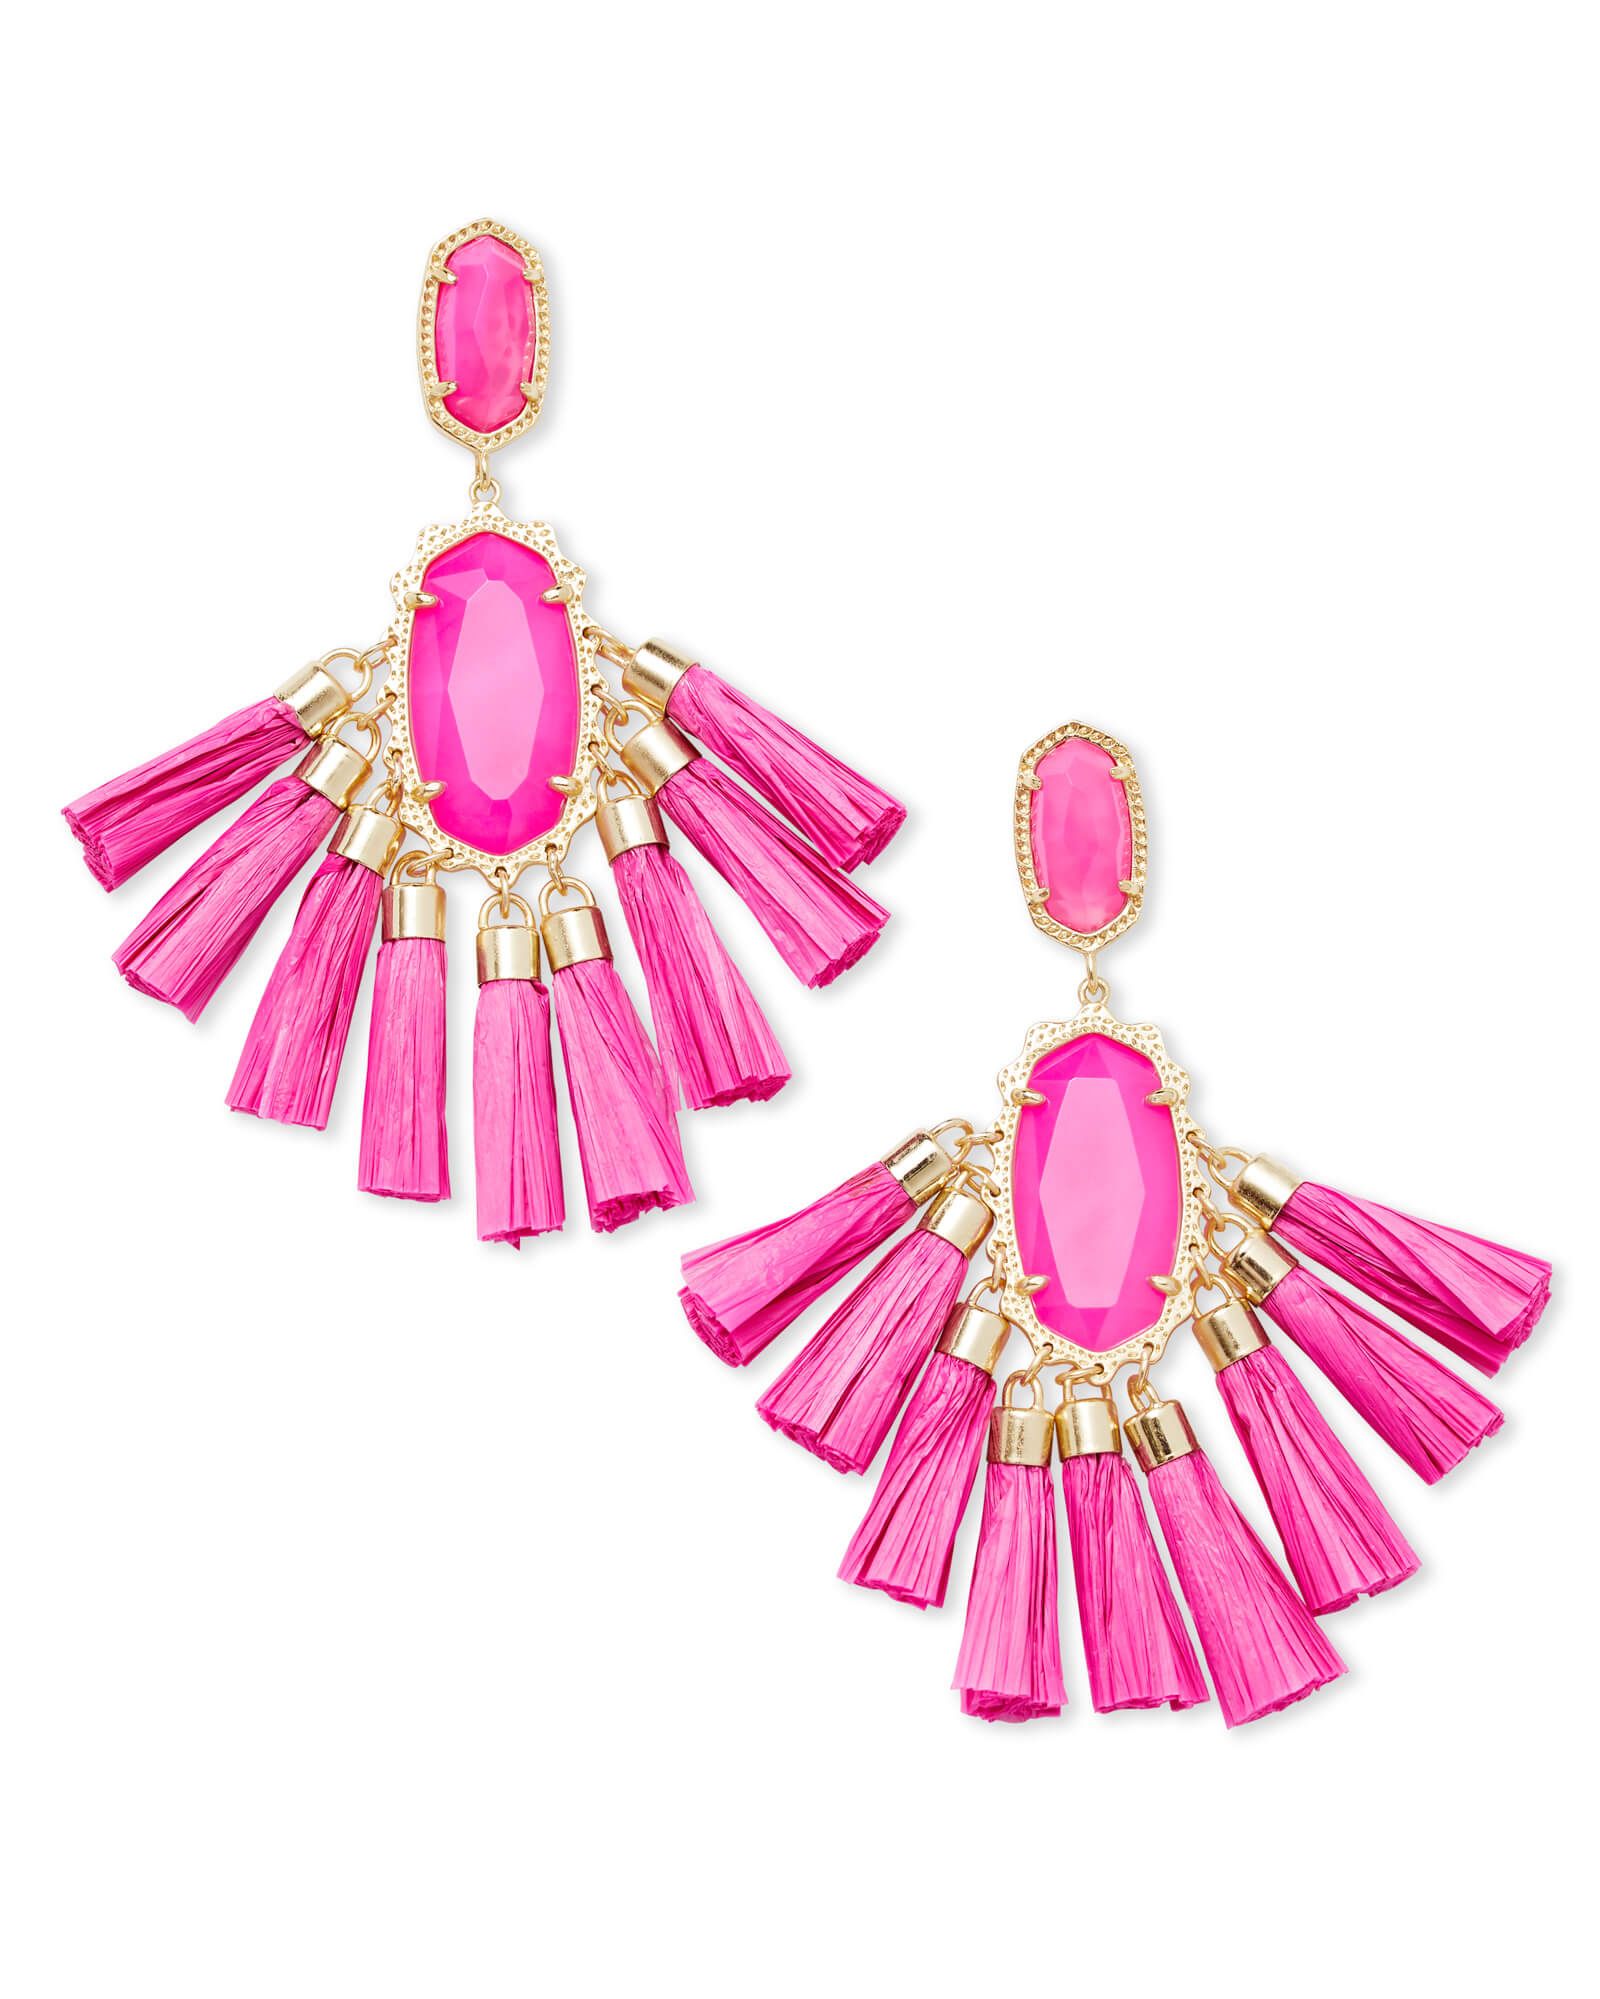 Kristen Gold Statement Earrings In Pink Agate | Kendra Scott